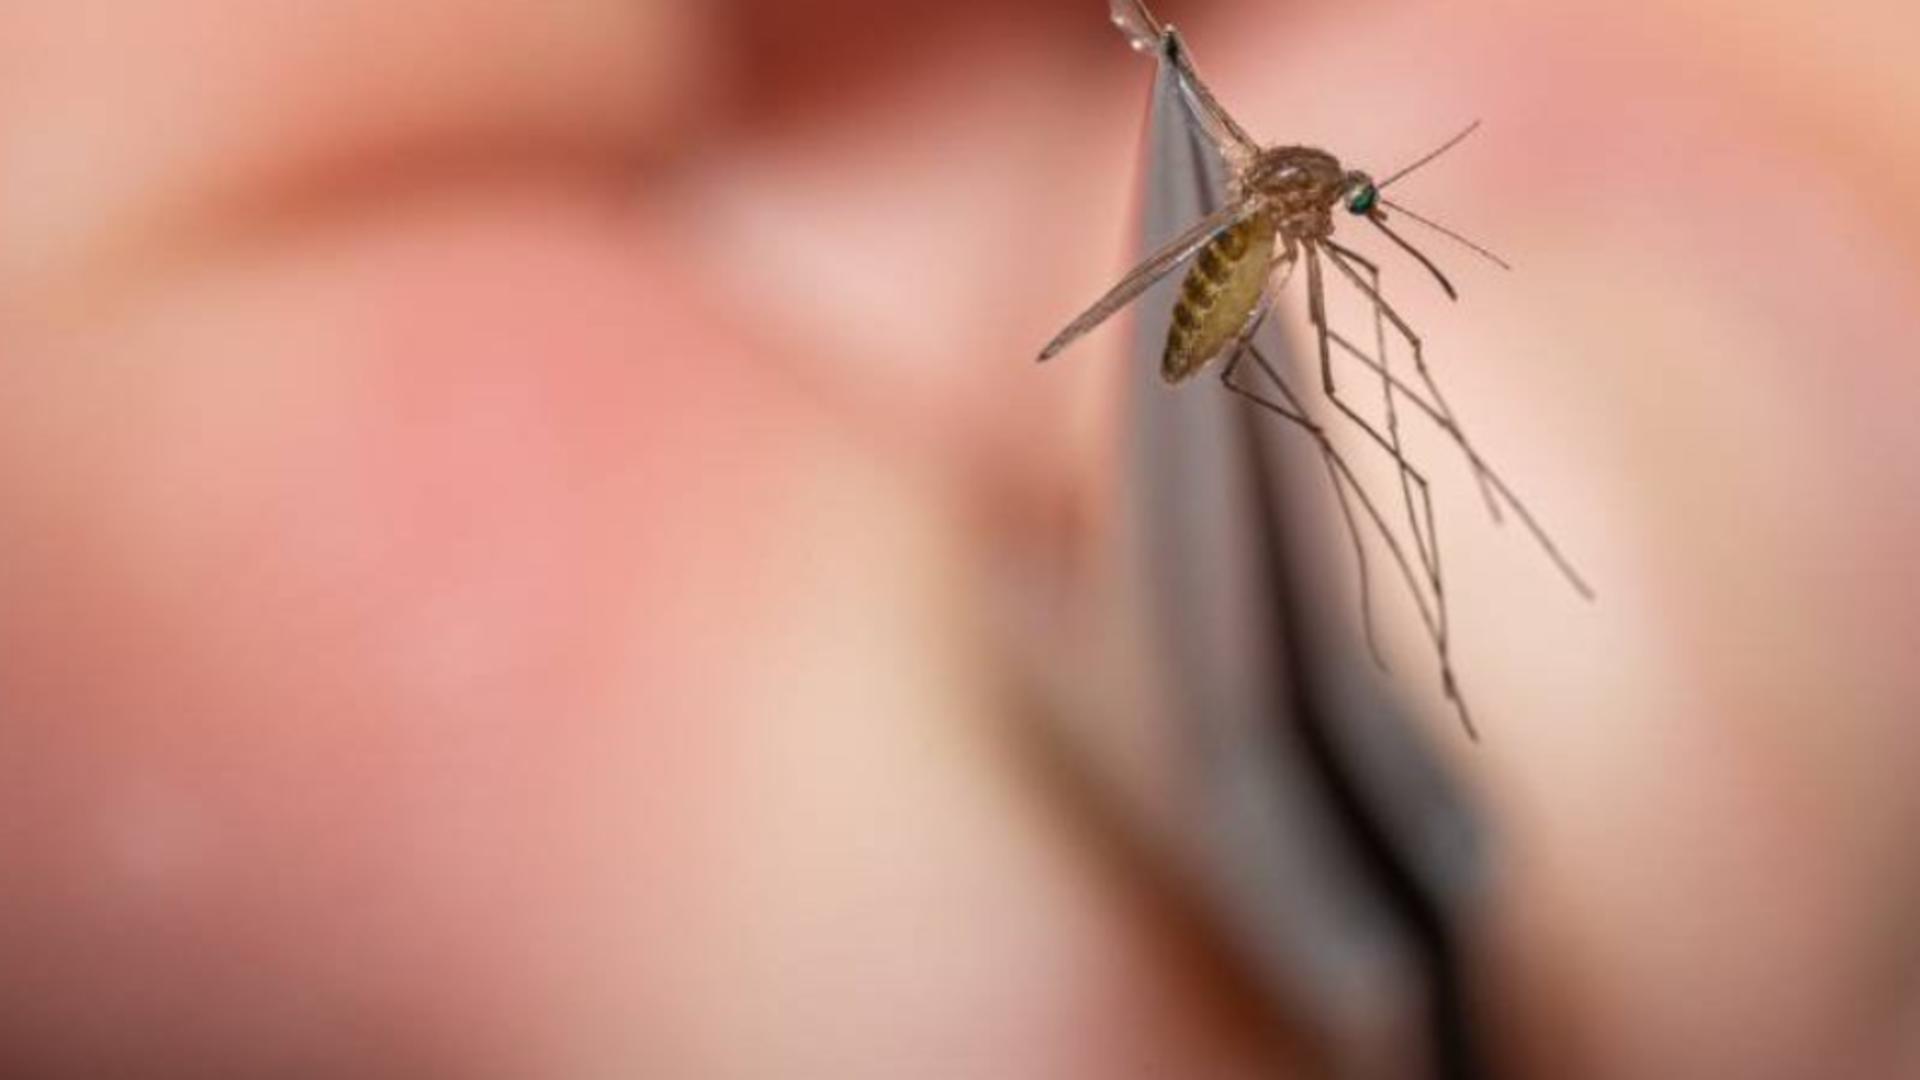 Remedii naturale împotriva țânțarilor – Ai la îndemână varianta homemade pentru a-i ține la distanță